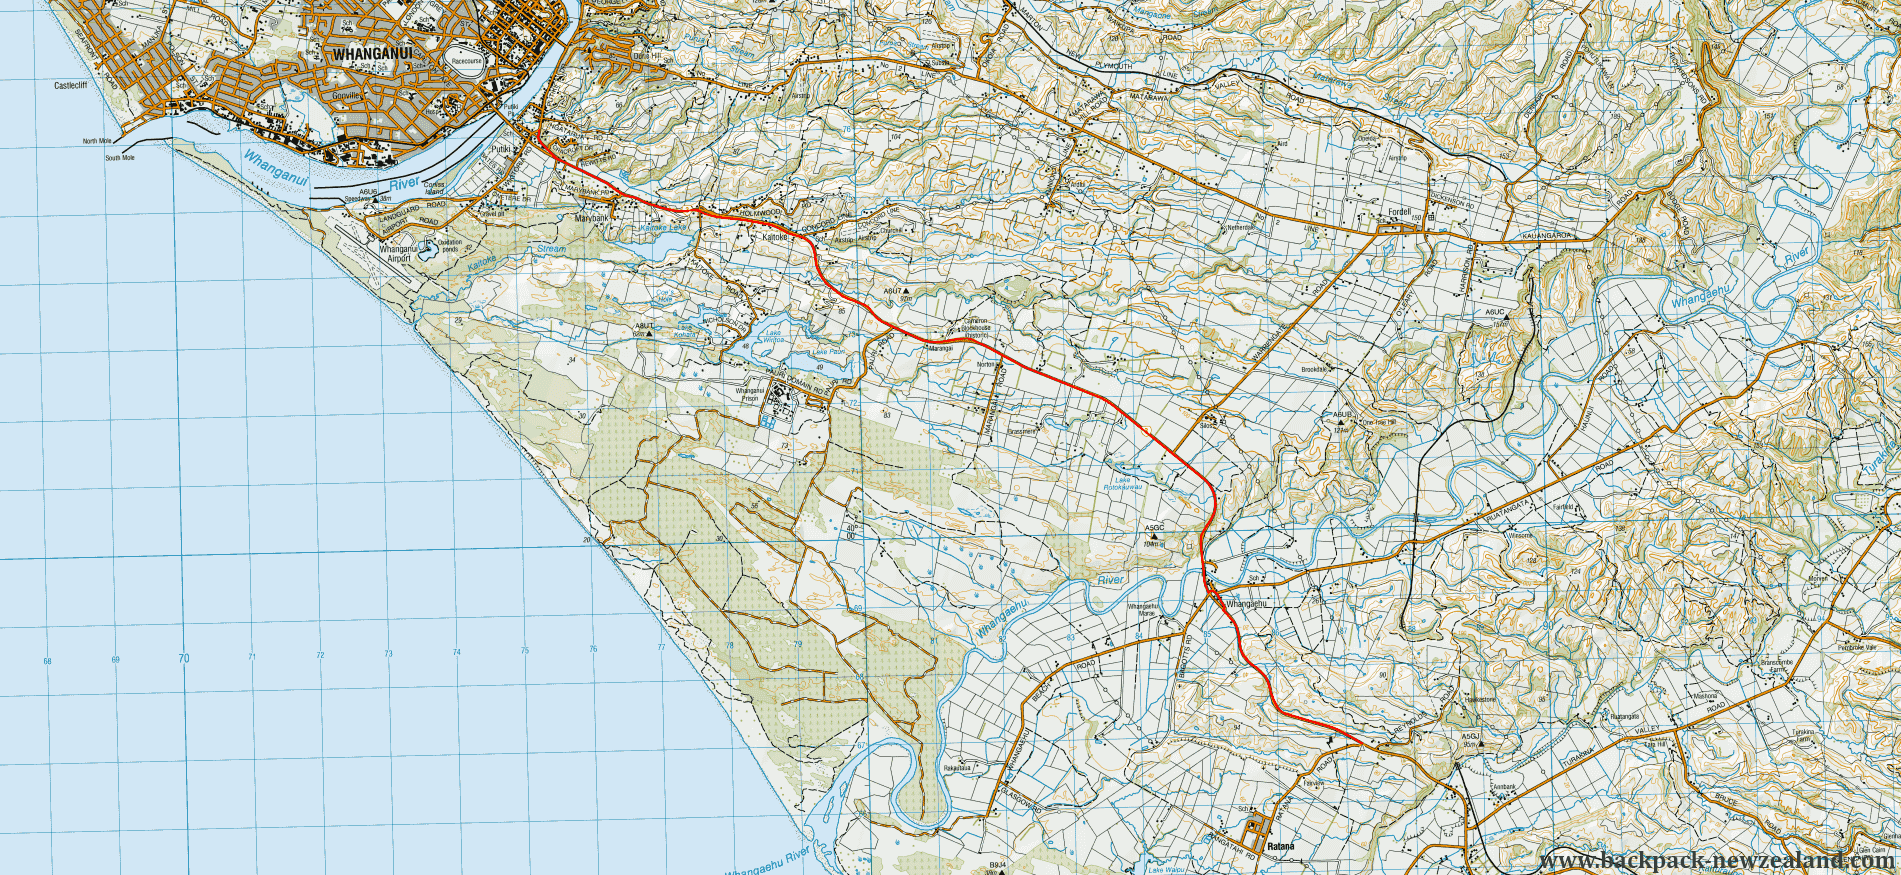 SH3 Wanganui Map - New Zealand Tracks